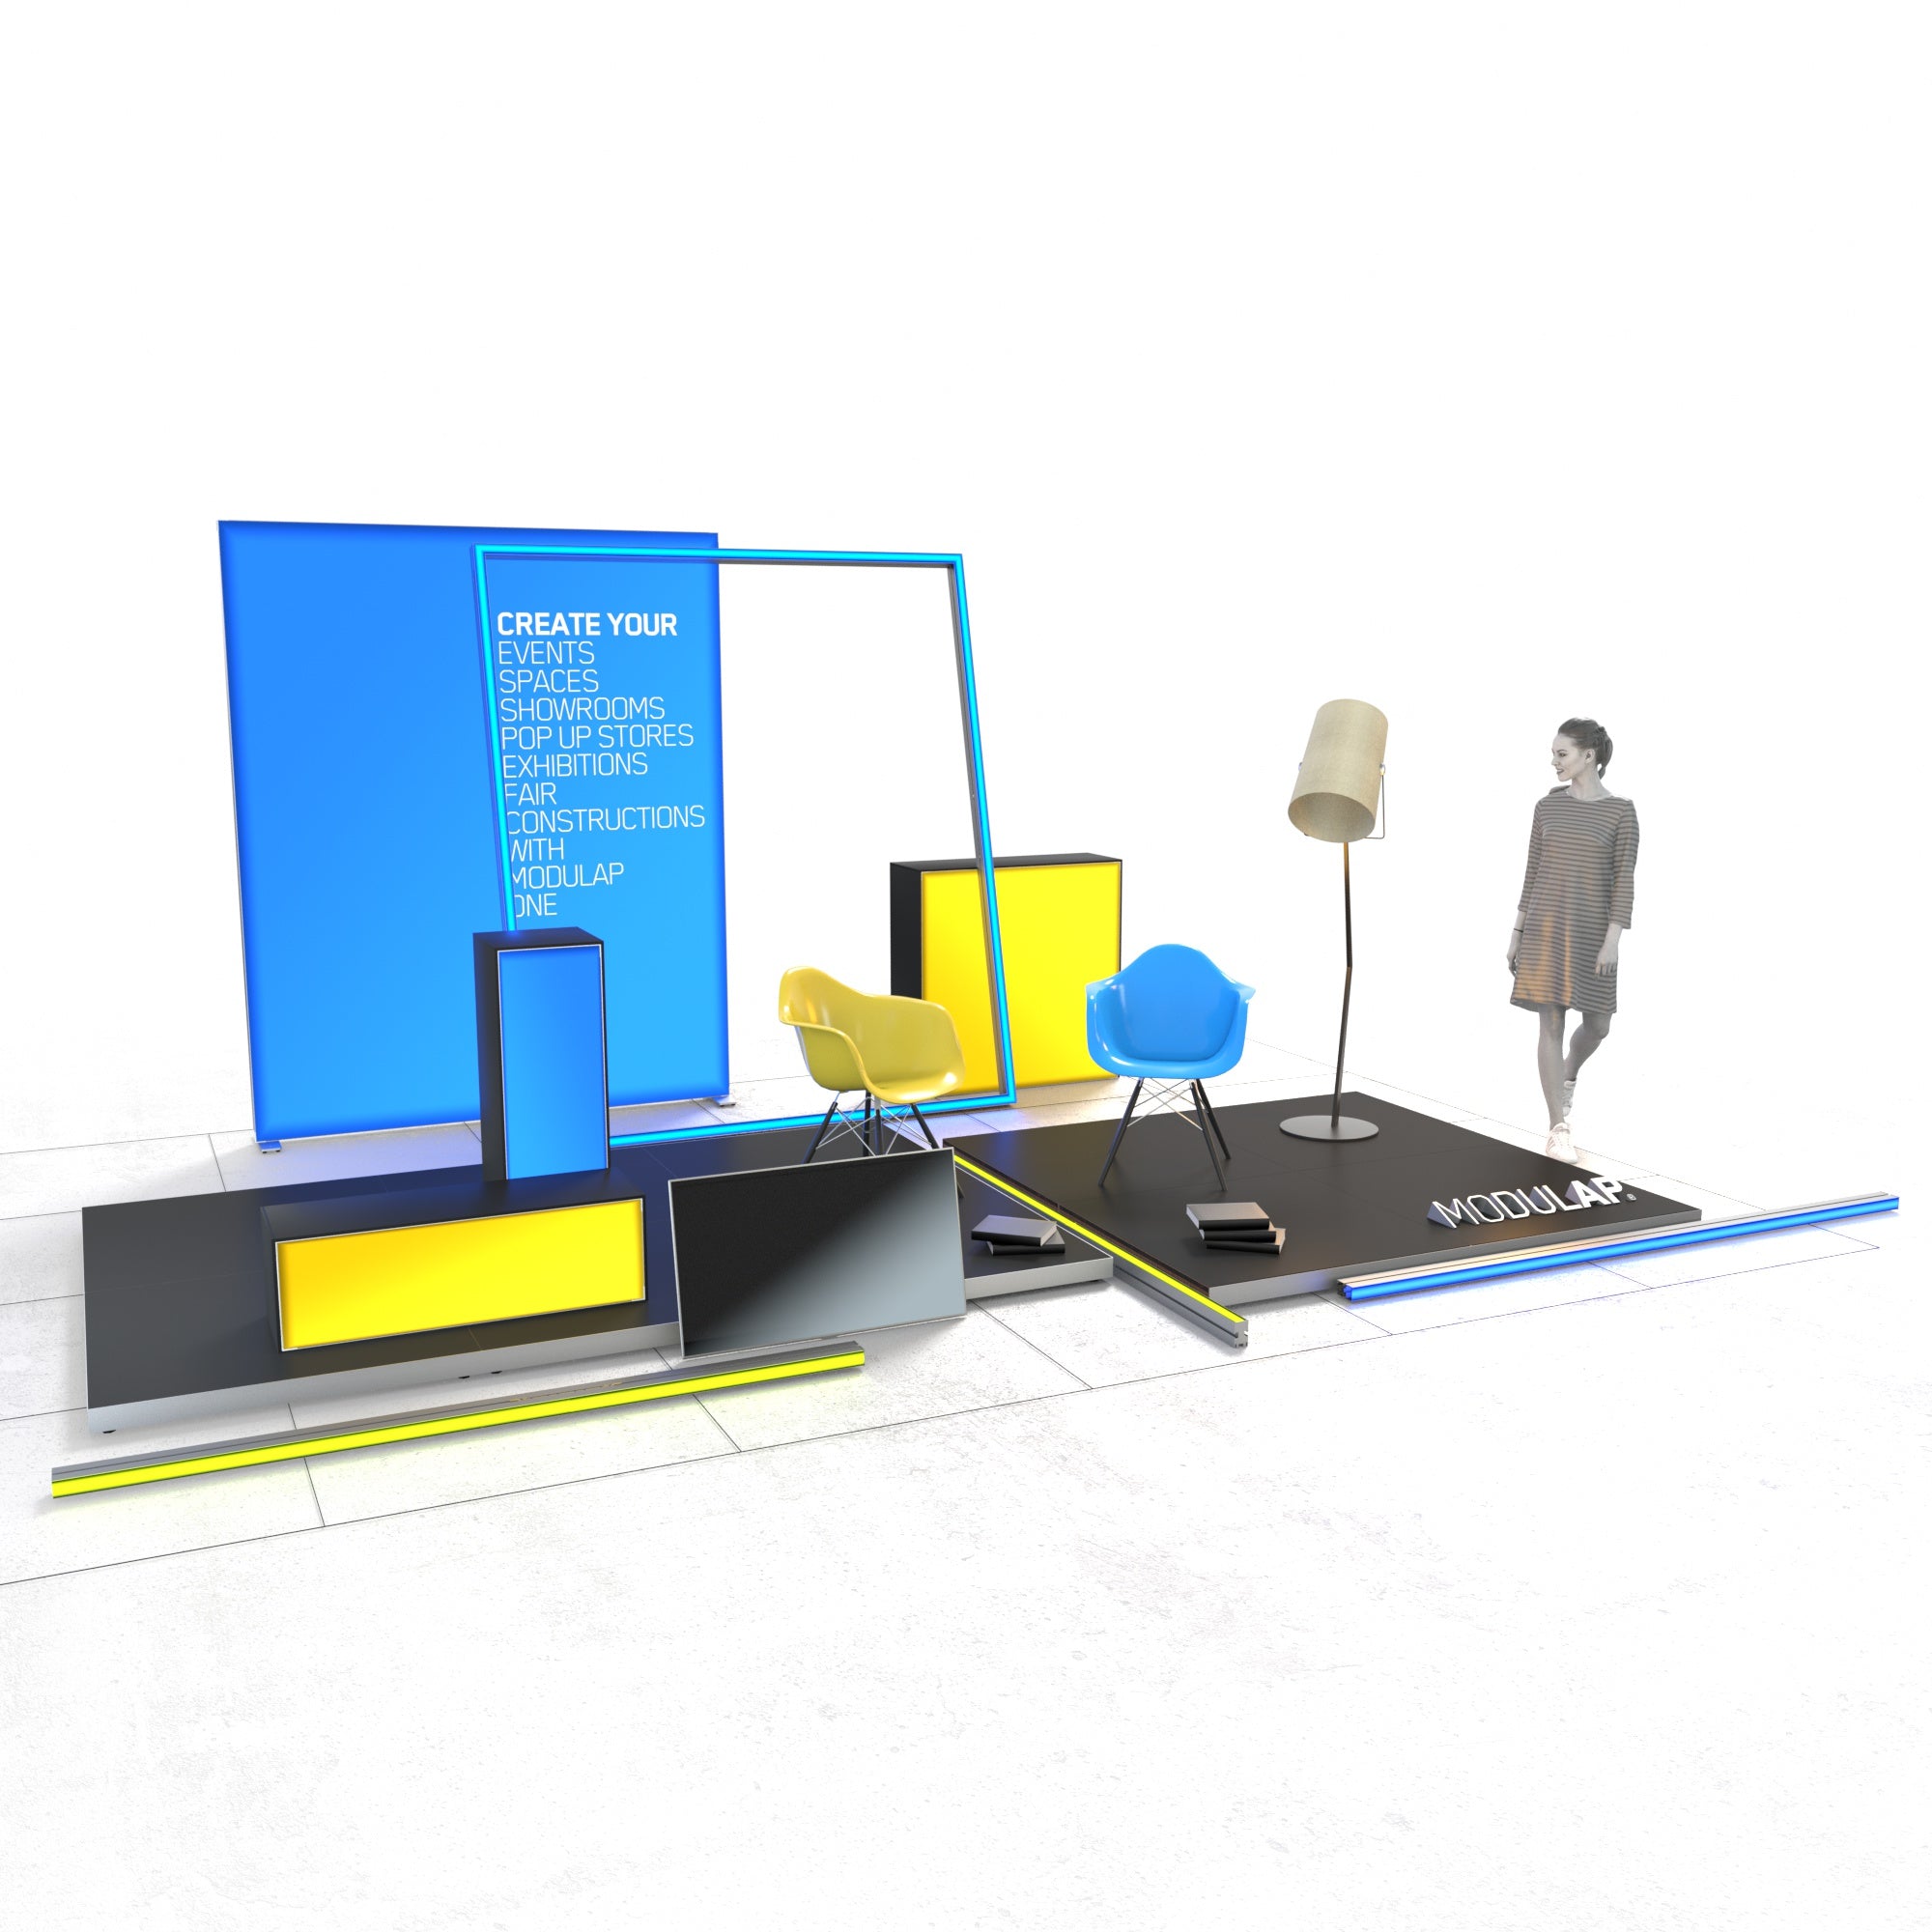  Ein moderner Event-Stand von Modulap, bestehend aus auffälligen gelben und blauen LED-Wänden. Zwei bunte Stühle und eine große Lampe schaffen eine einladende Atmosphäre. Eine Person geht an dem Stand vorbei, der durch klare Linien und lebendige Farben eine attraktive Präsentationsfläche bietet.